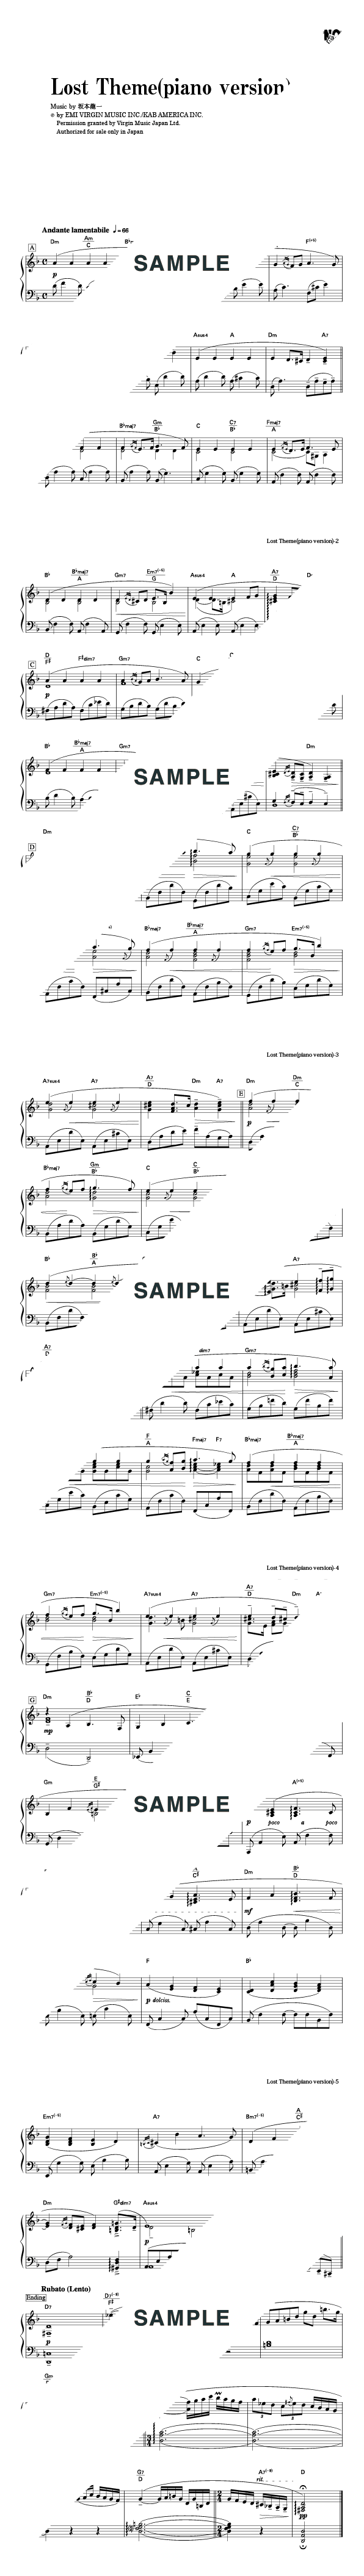 坂本龍一 ピアノ 楽譜 /05 - www.muniloslagos.cl